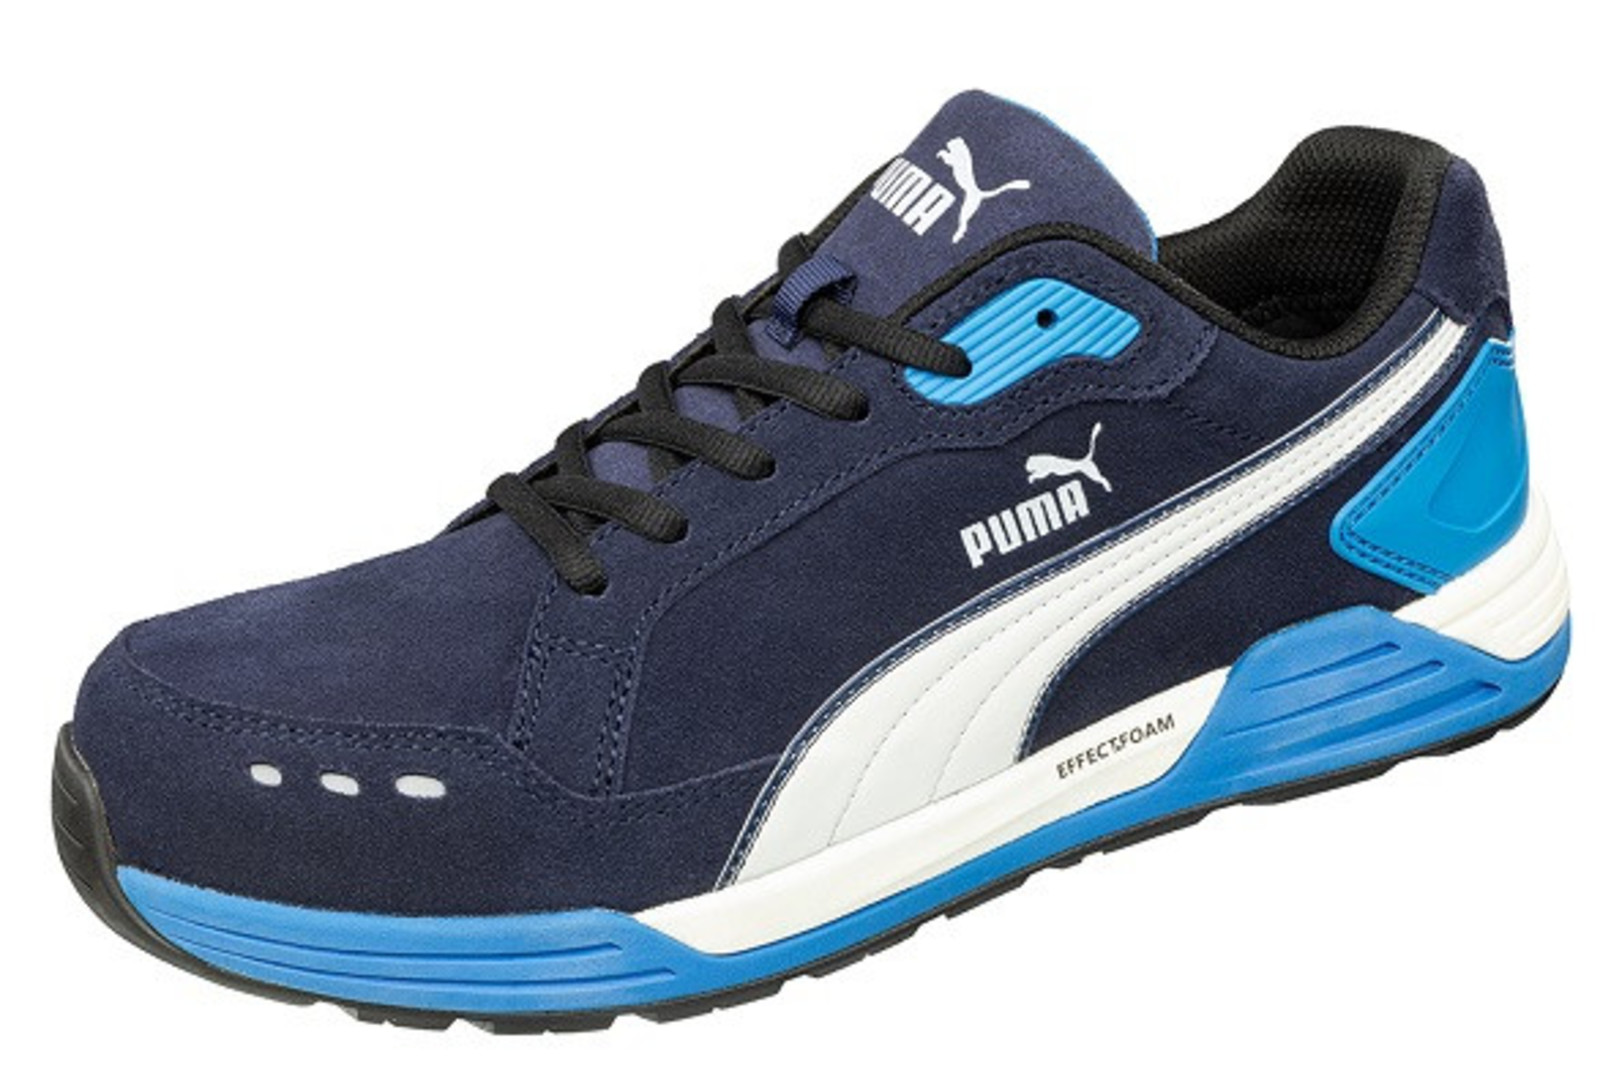 Bezpečnostná obuv Puma Airtwist S3 - veľkosť: 44, farba: modrá